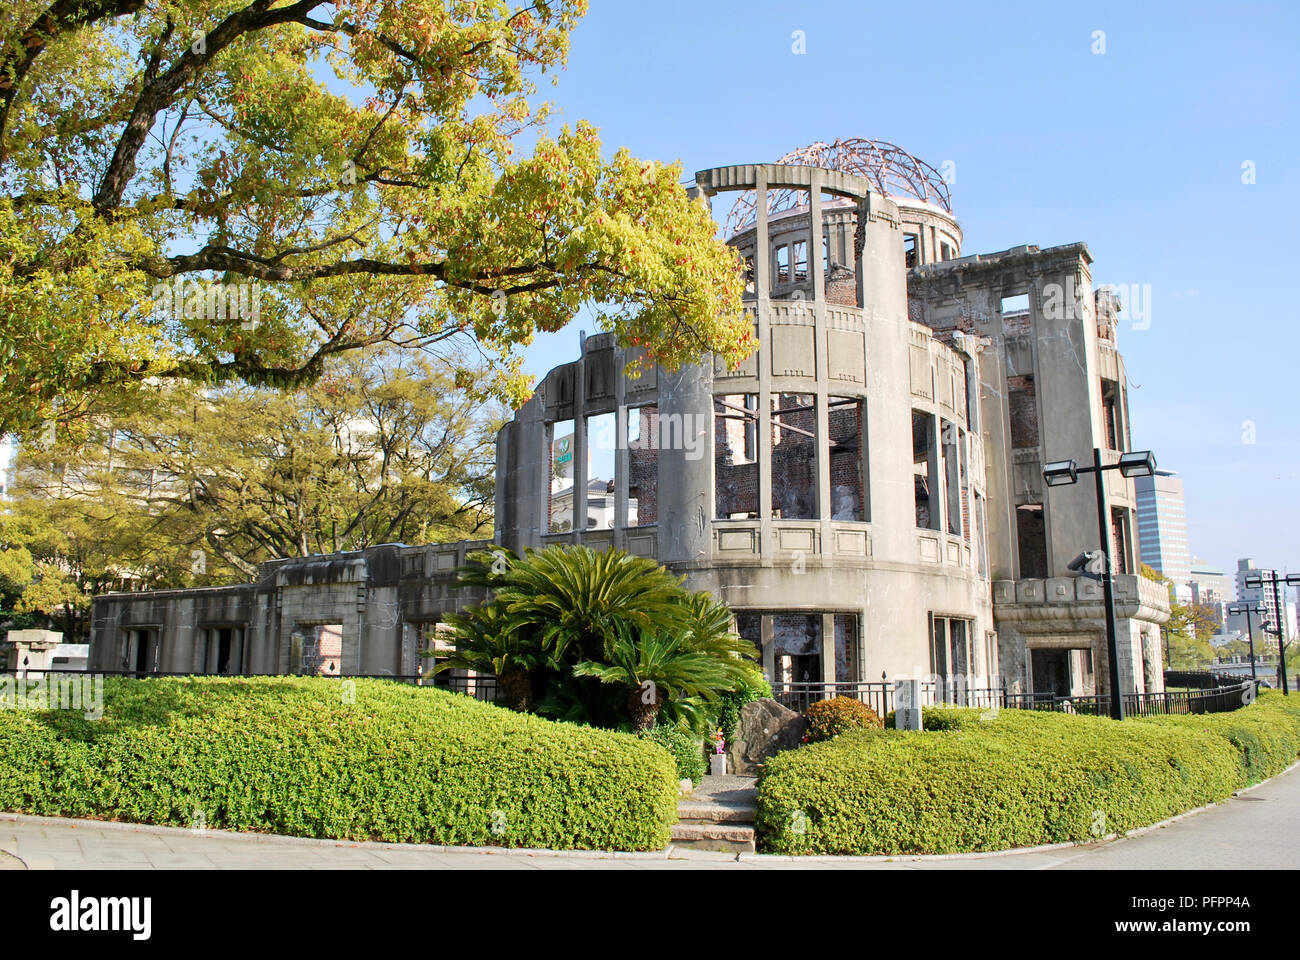 La Cupola della Bomba Atomica, Hiroshima, Giappone Foto Stock